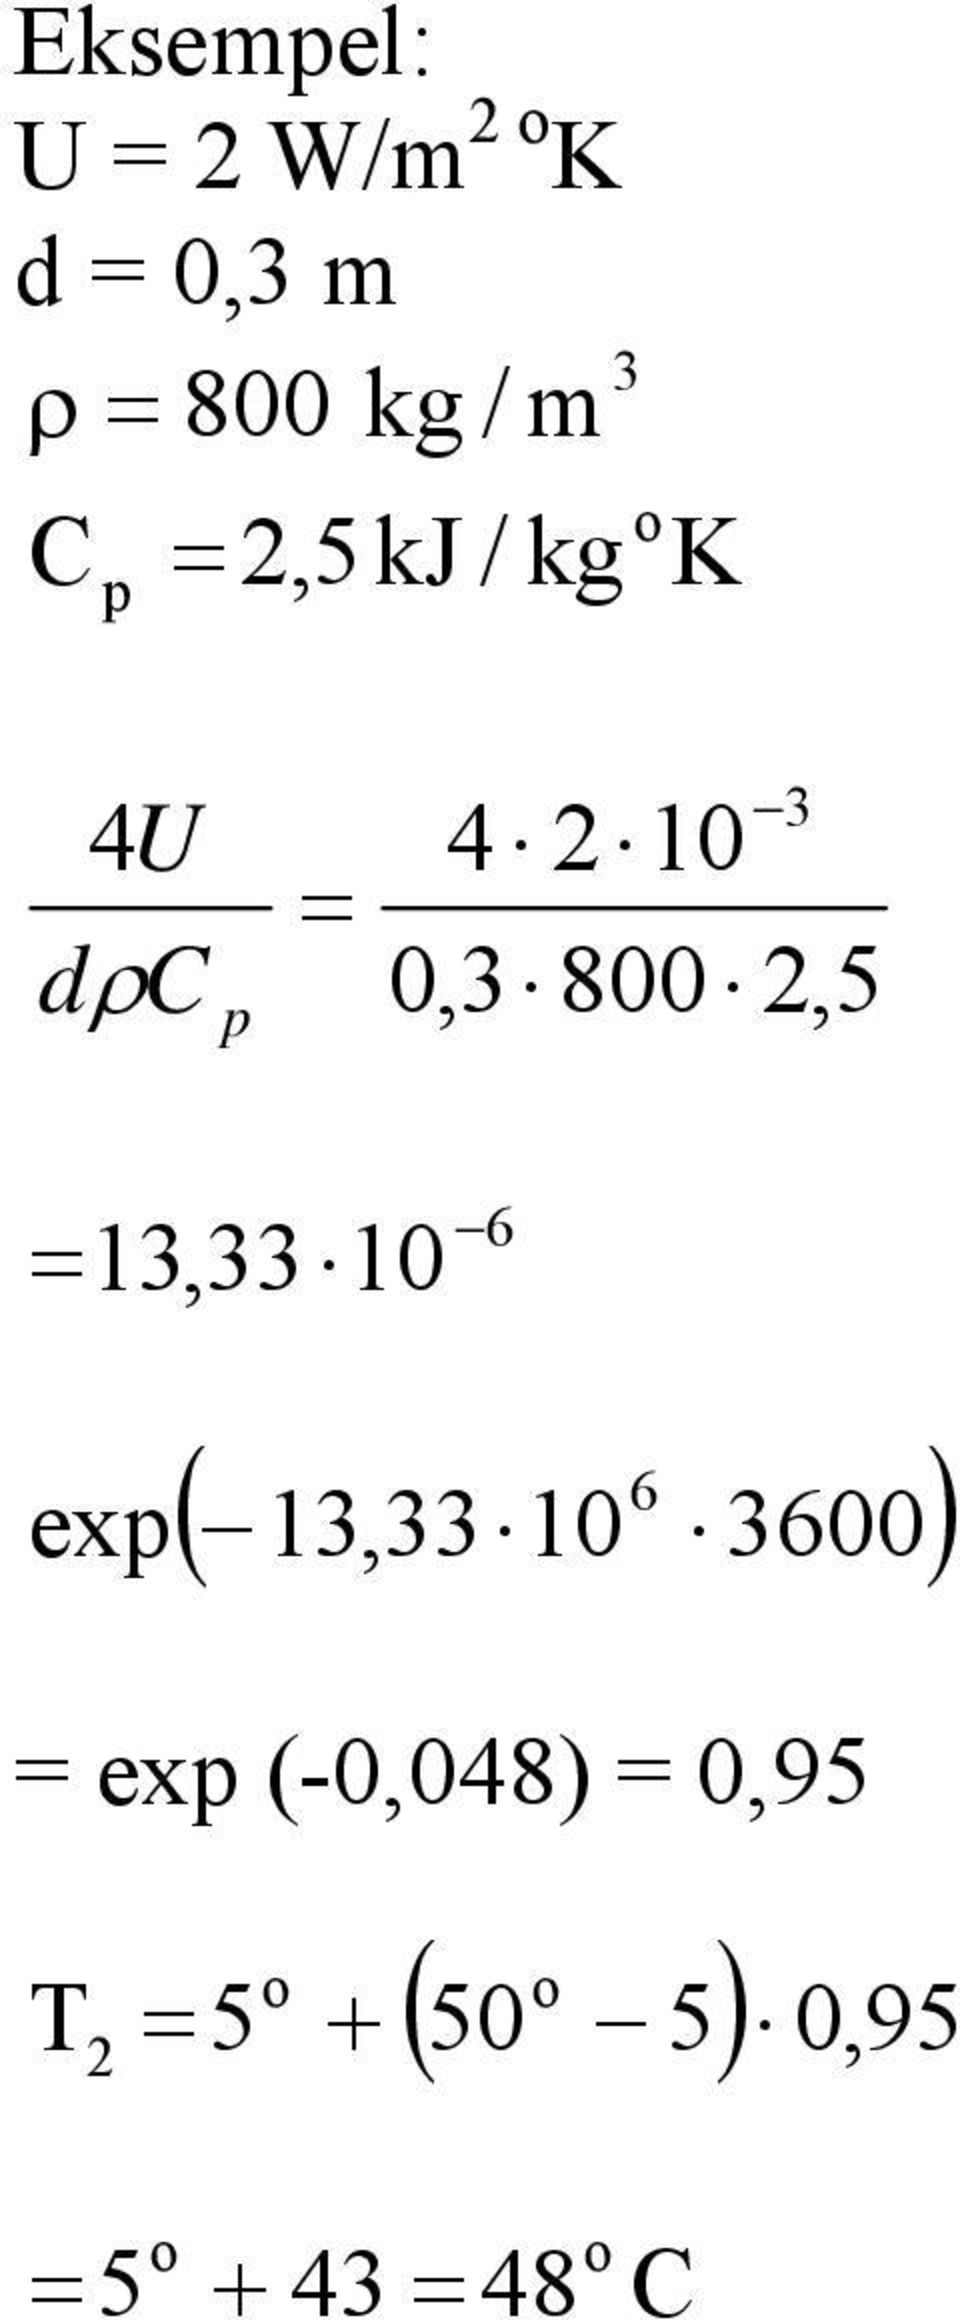 3,33 0 ex 6 ( 3,33 0 6 3600) = ex (-0,048) =